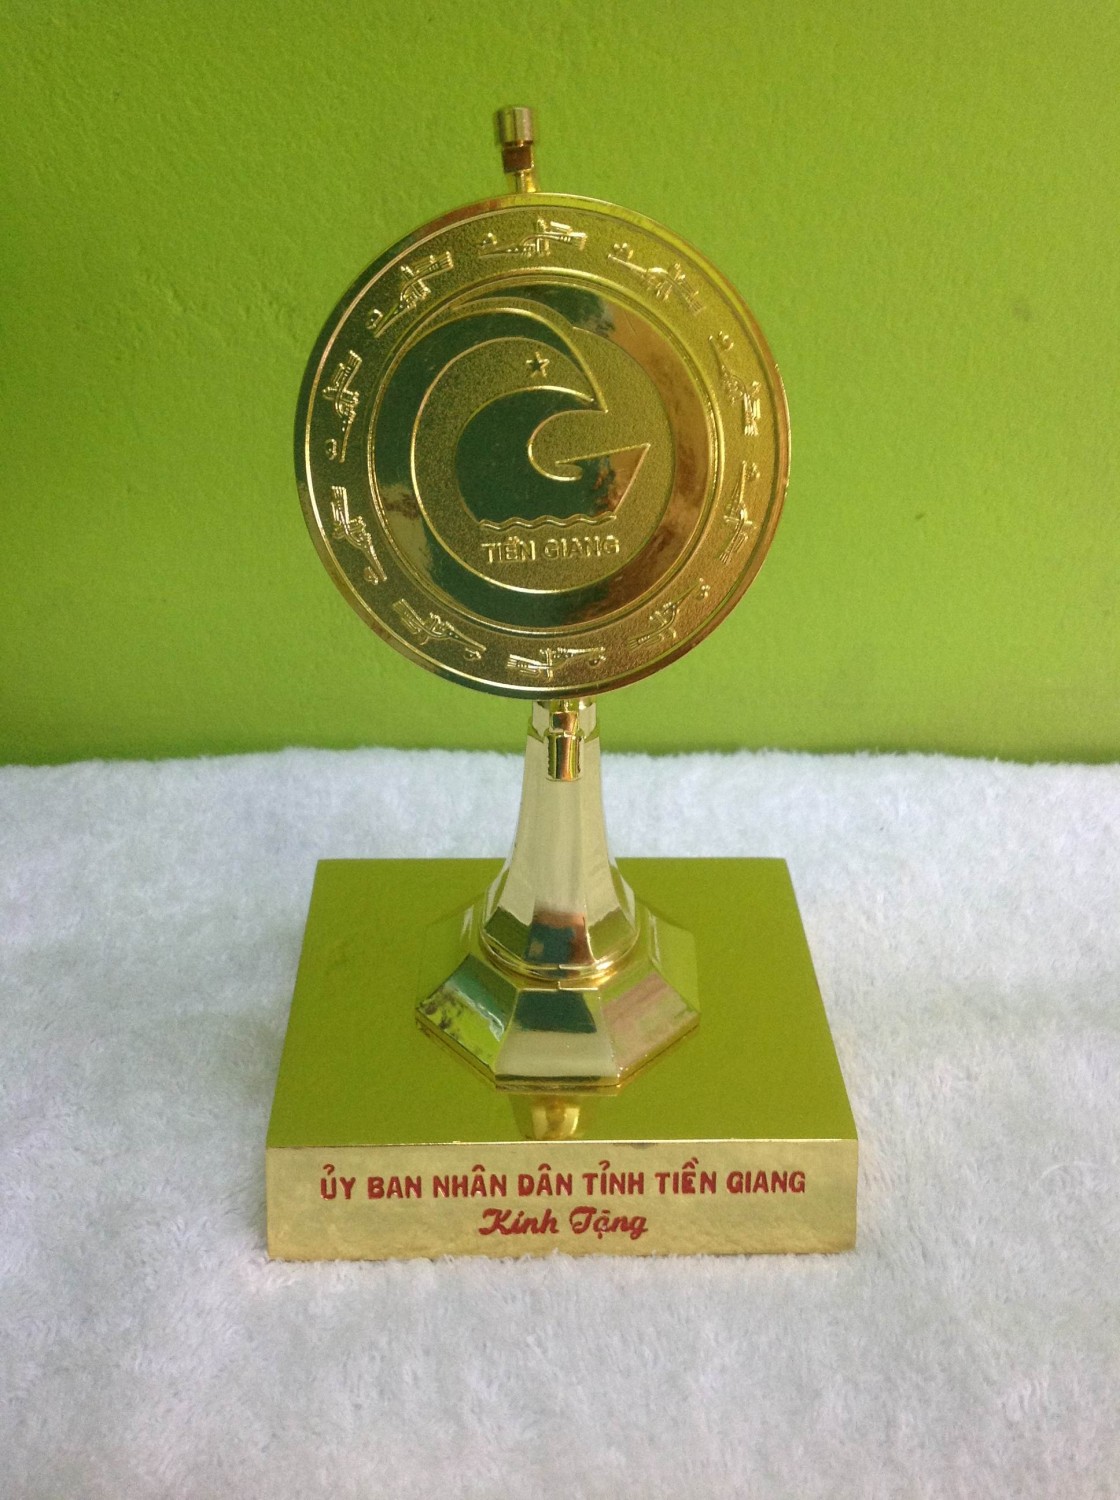 Thành Tựu Công Ty đạt được các giải thưởng cao quý của tỉnh Tiền Giang